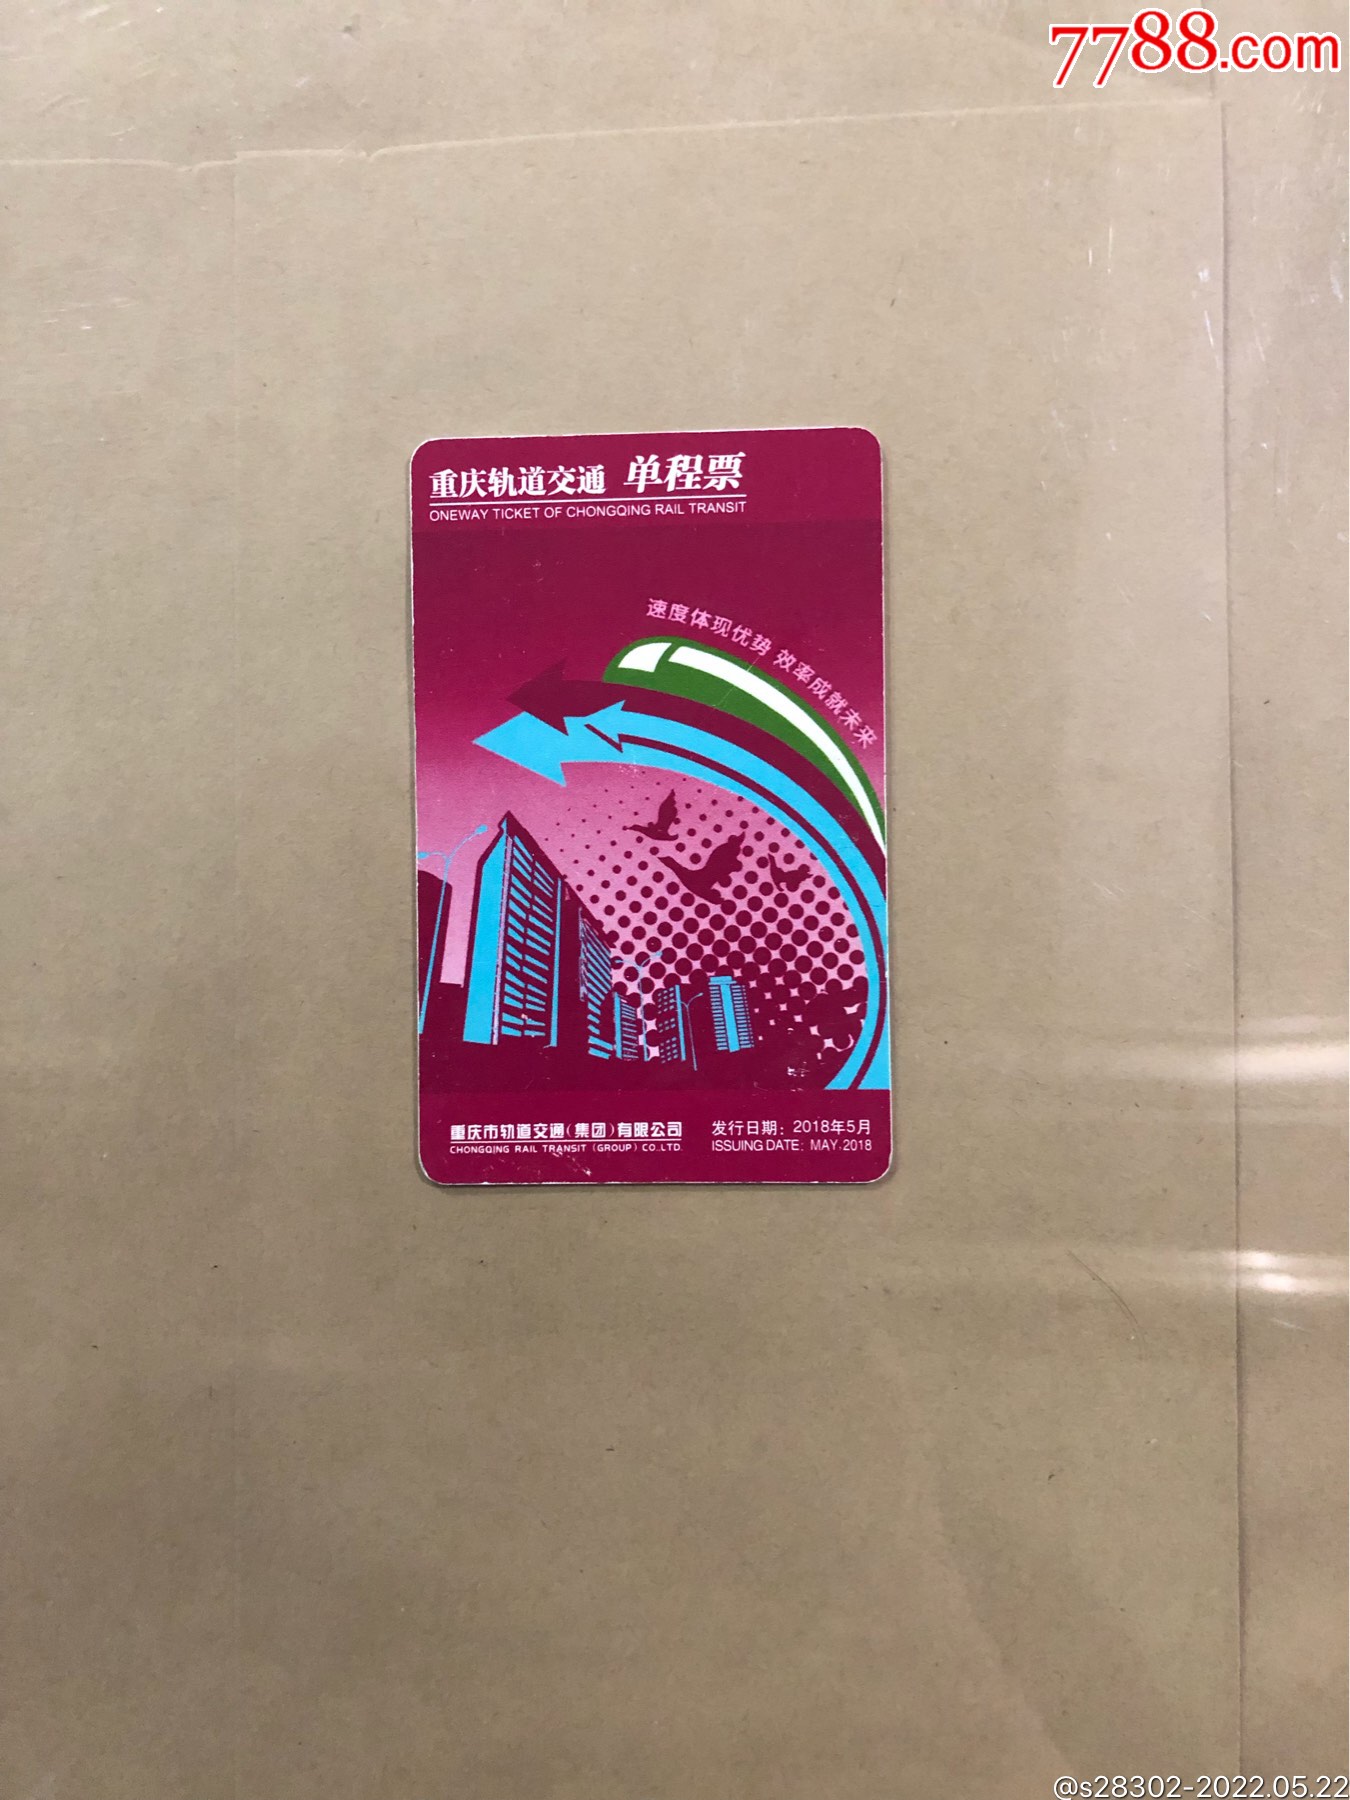 重庆地铁发票图片